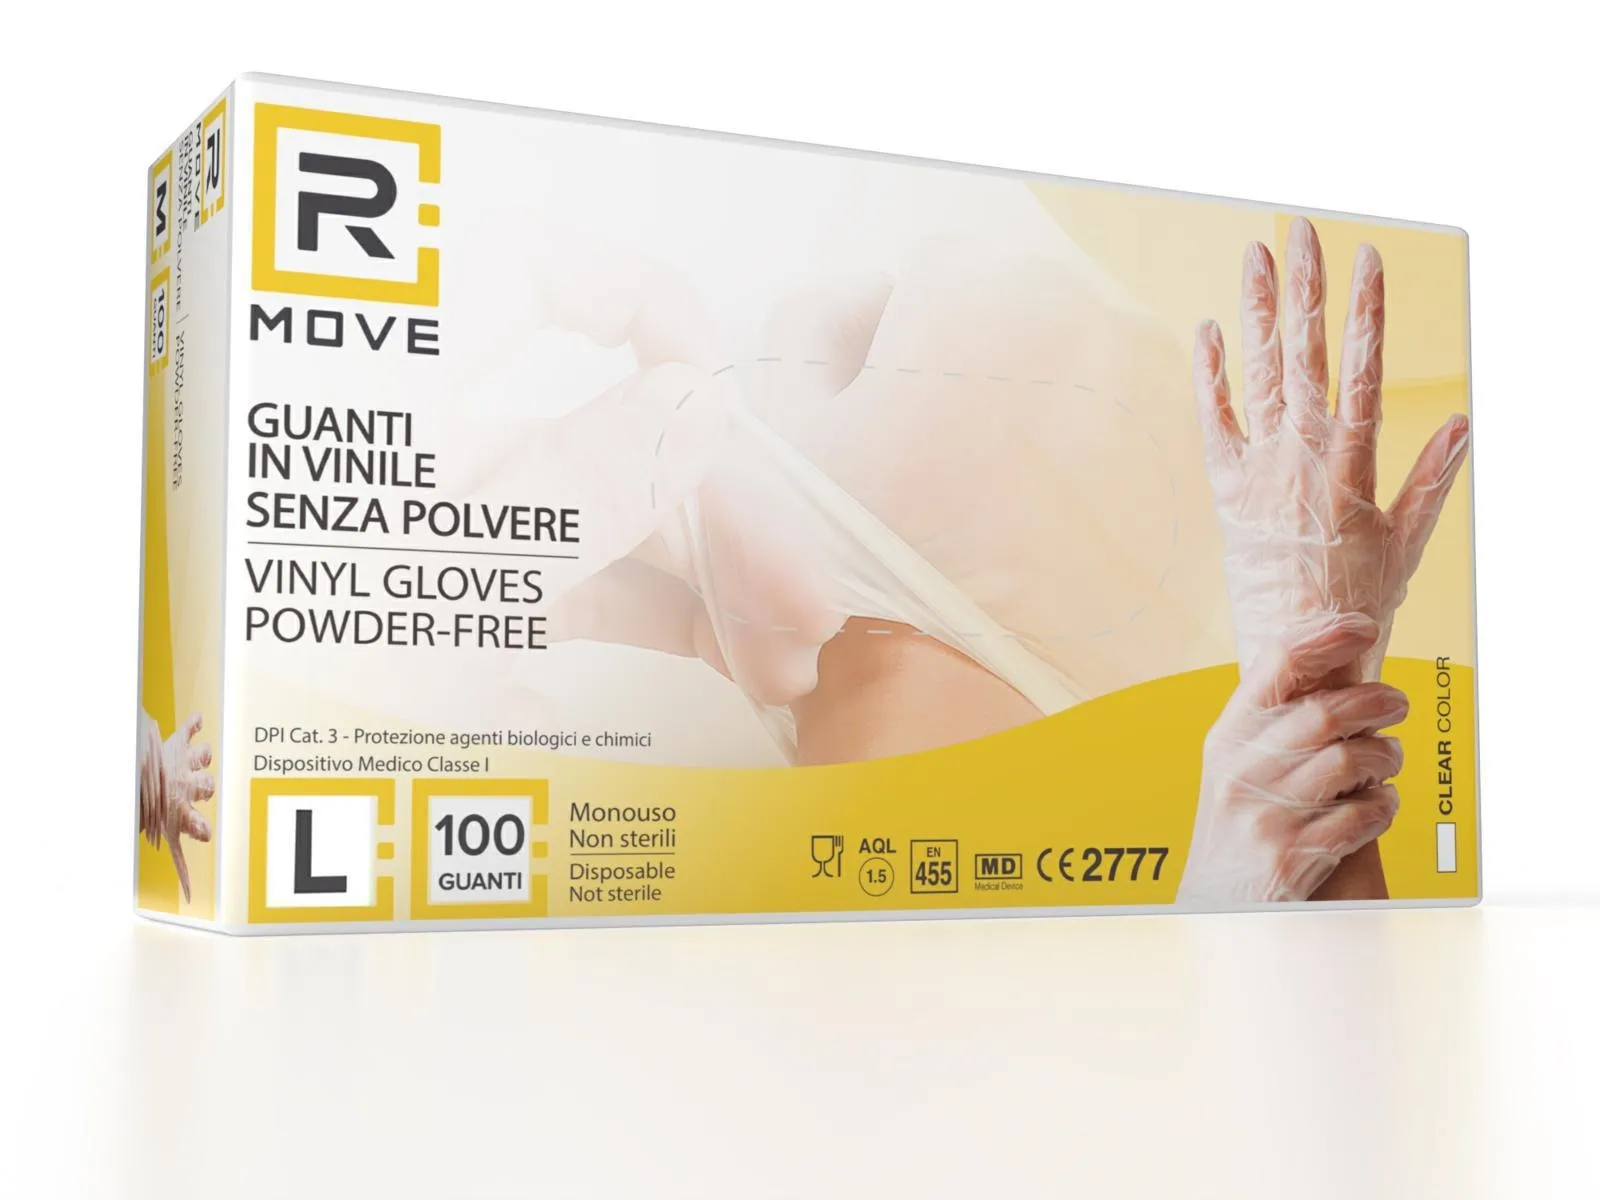 Box guanti rmove in vinile clear uso medico senza polvere tg.l